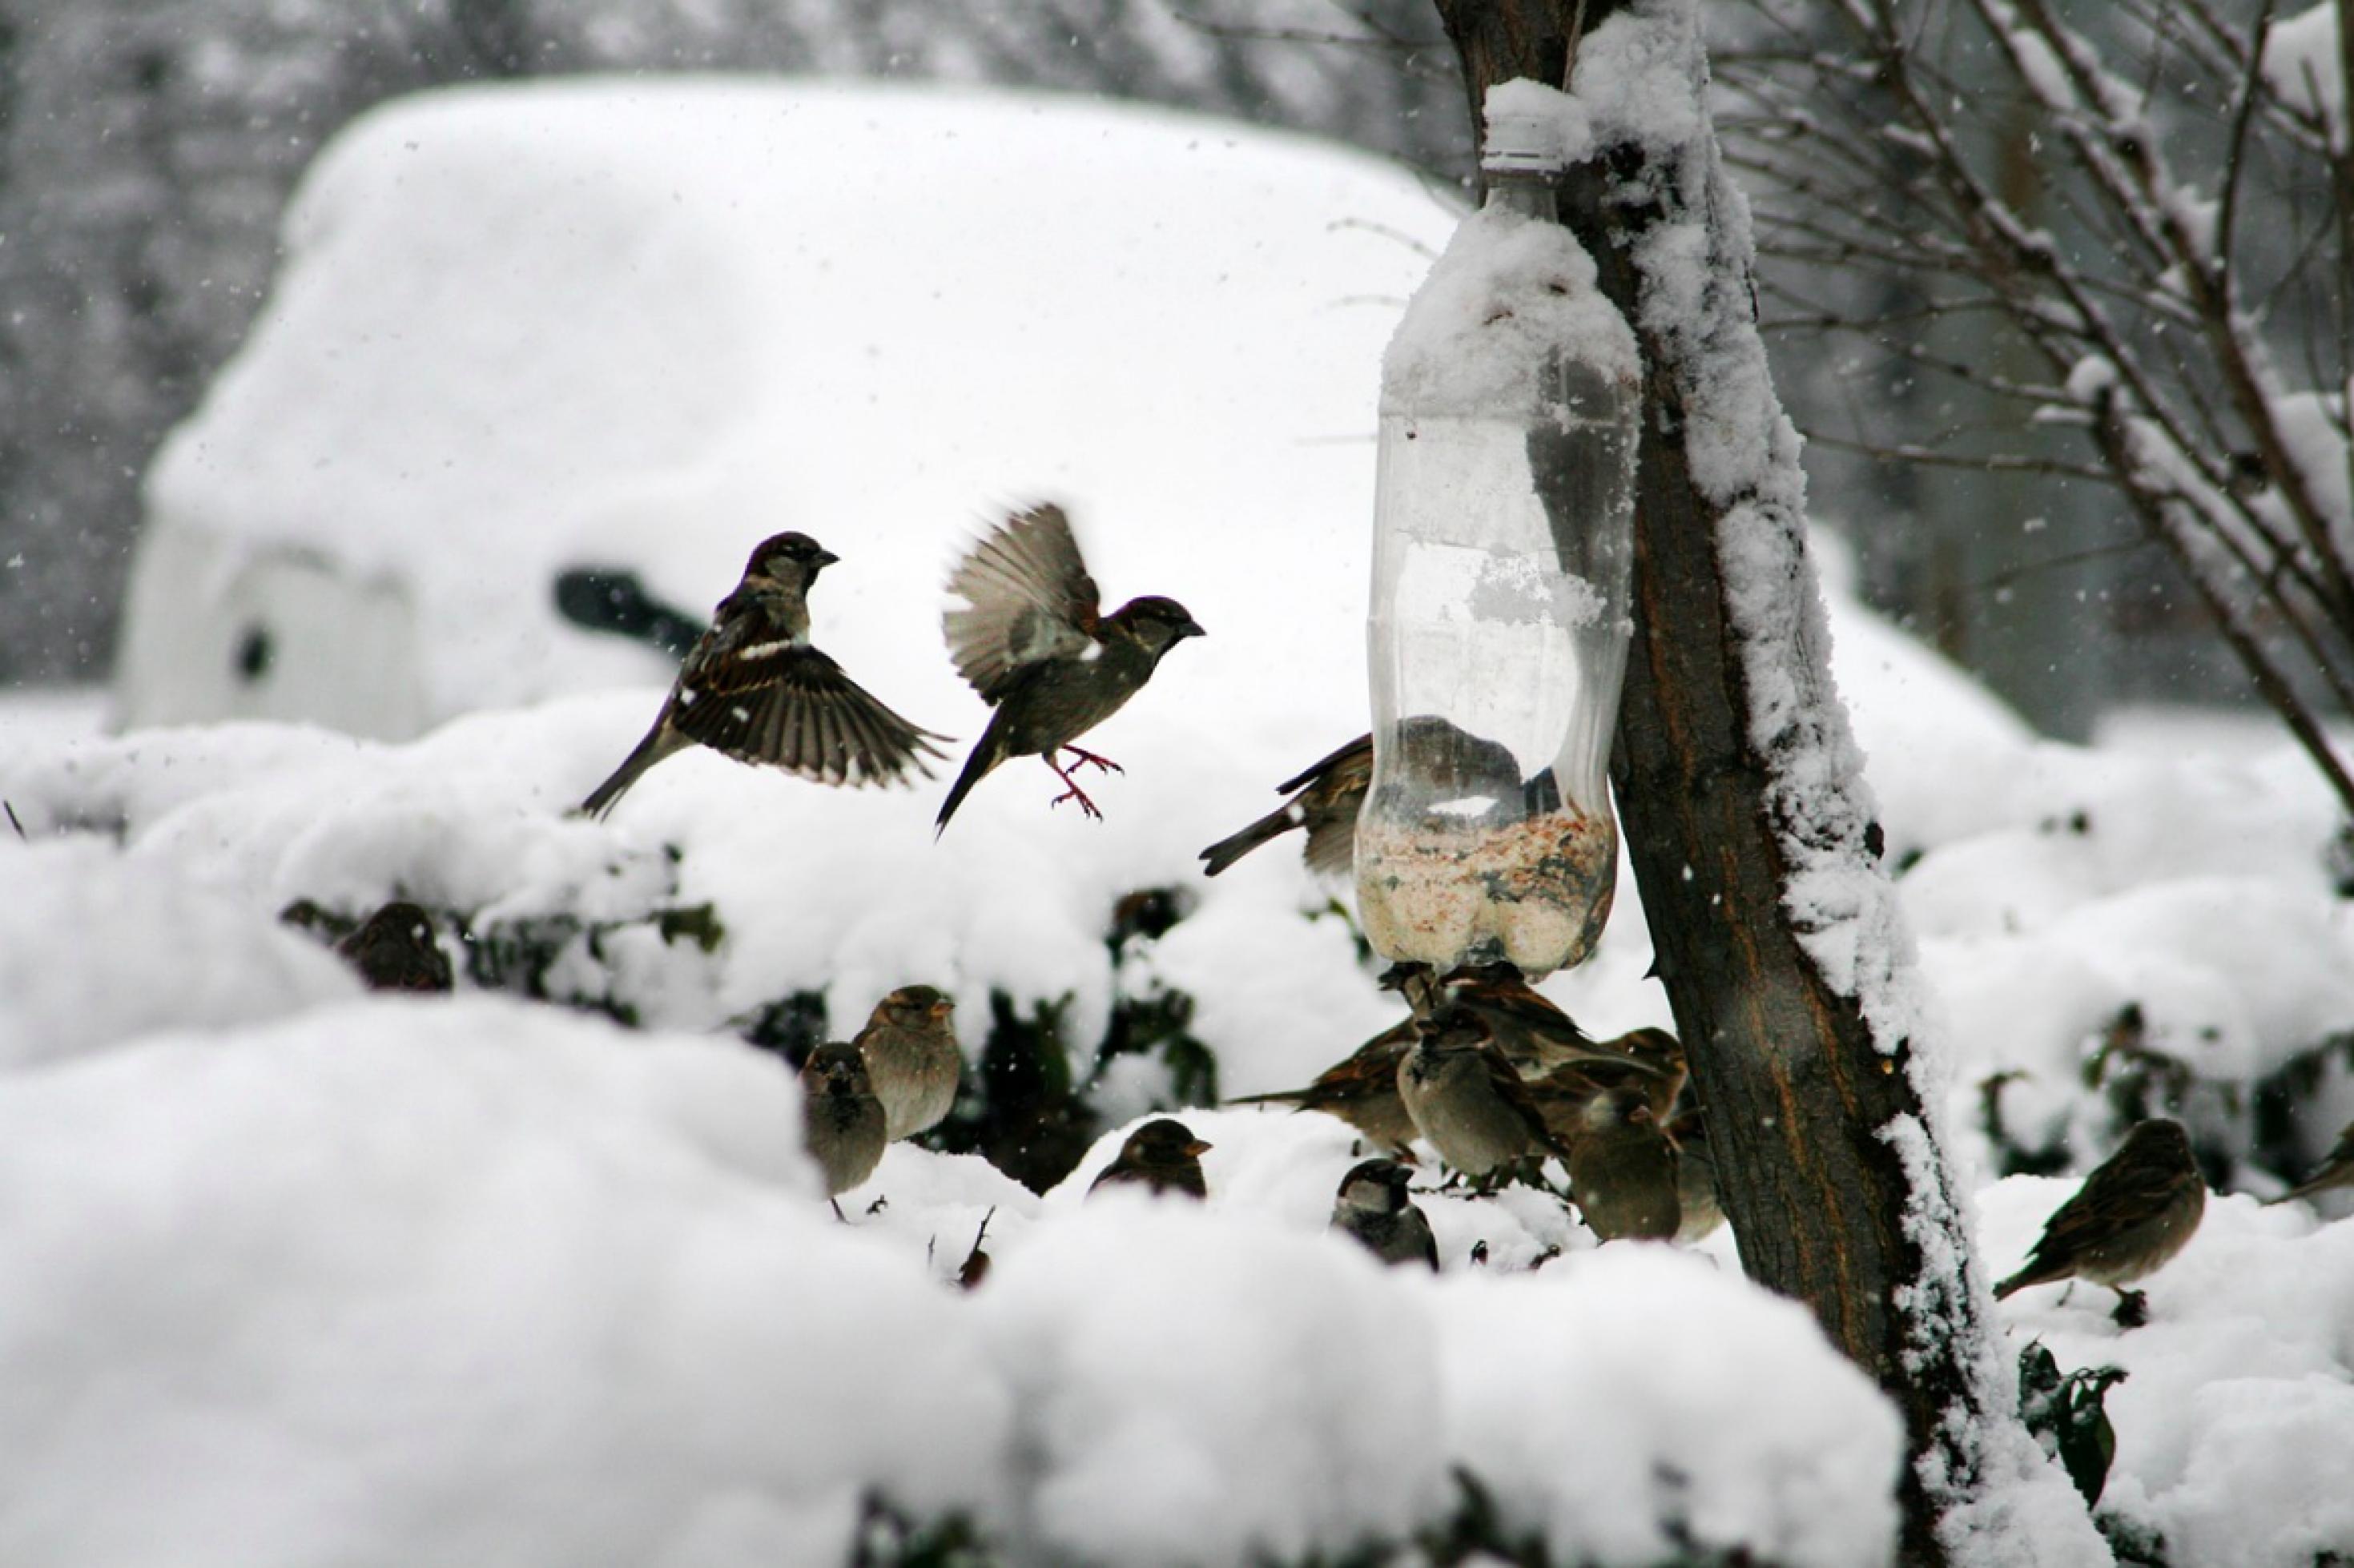 Ein Schwarm Haussperlinge versammelt sich in einem schneebedeckten Garten rund um eine zum Körnerfutterspender umfunktionierte Plastikflasche